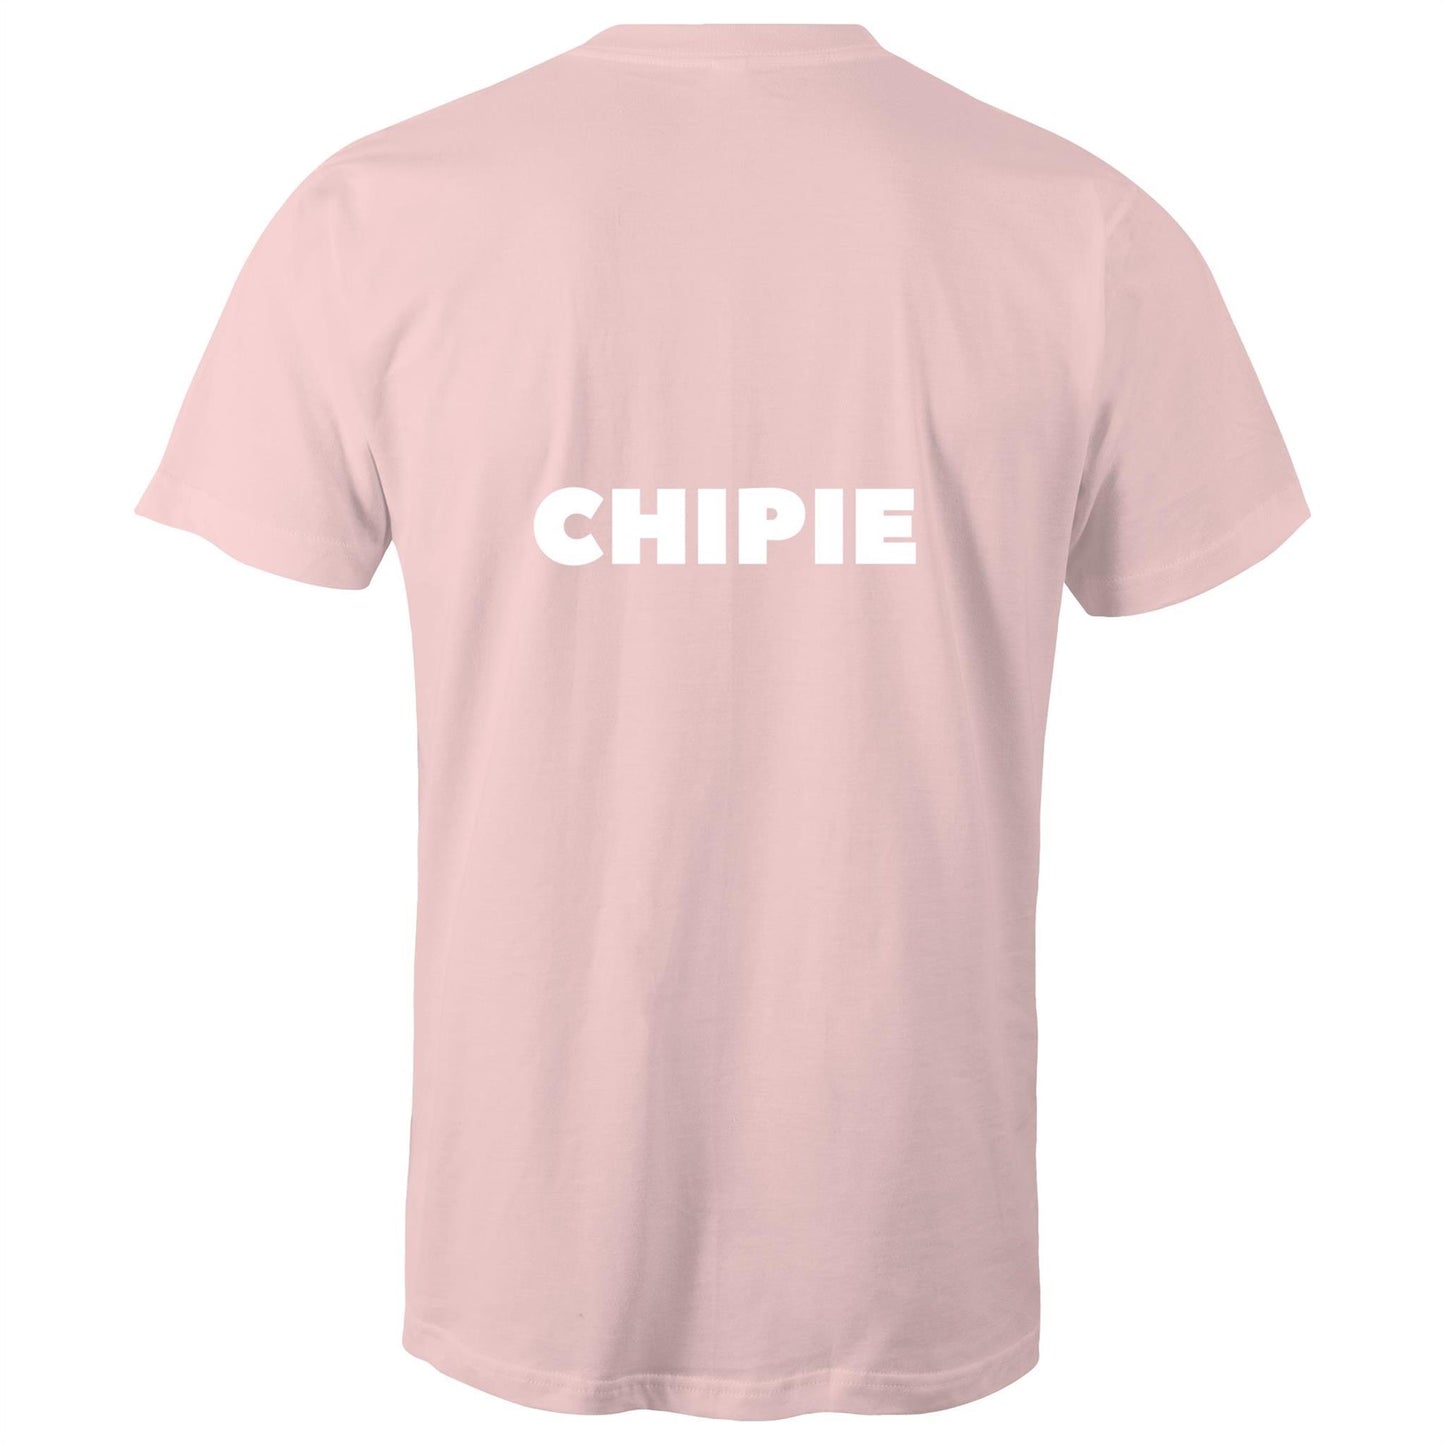 CHIPIE - Unisex T-Shirt